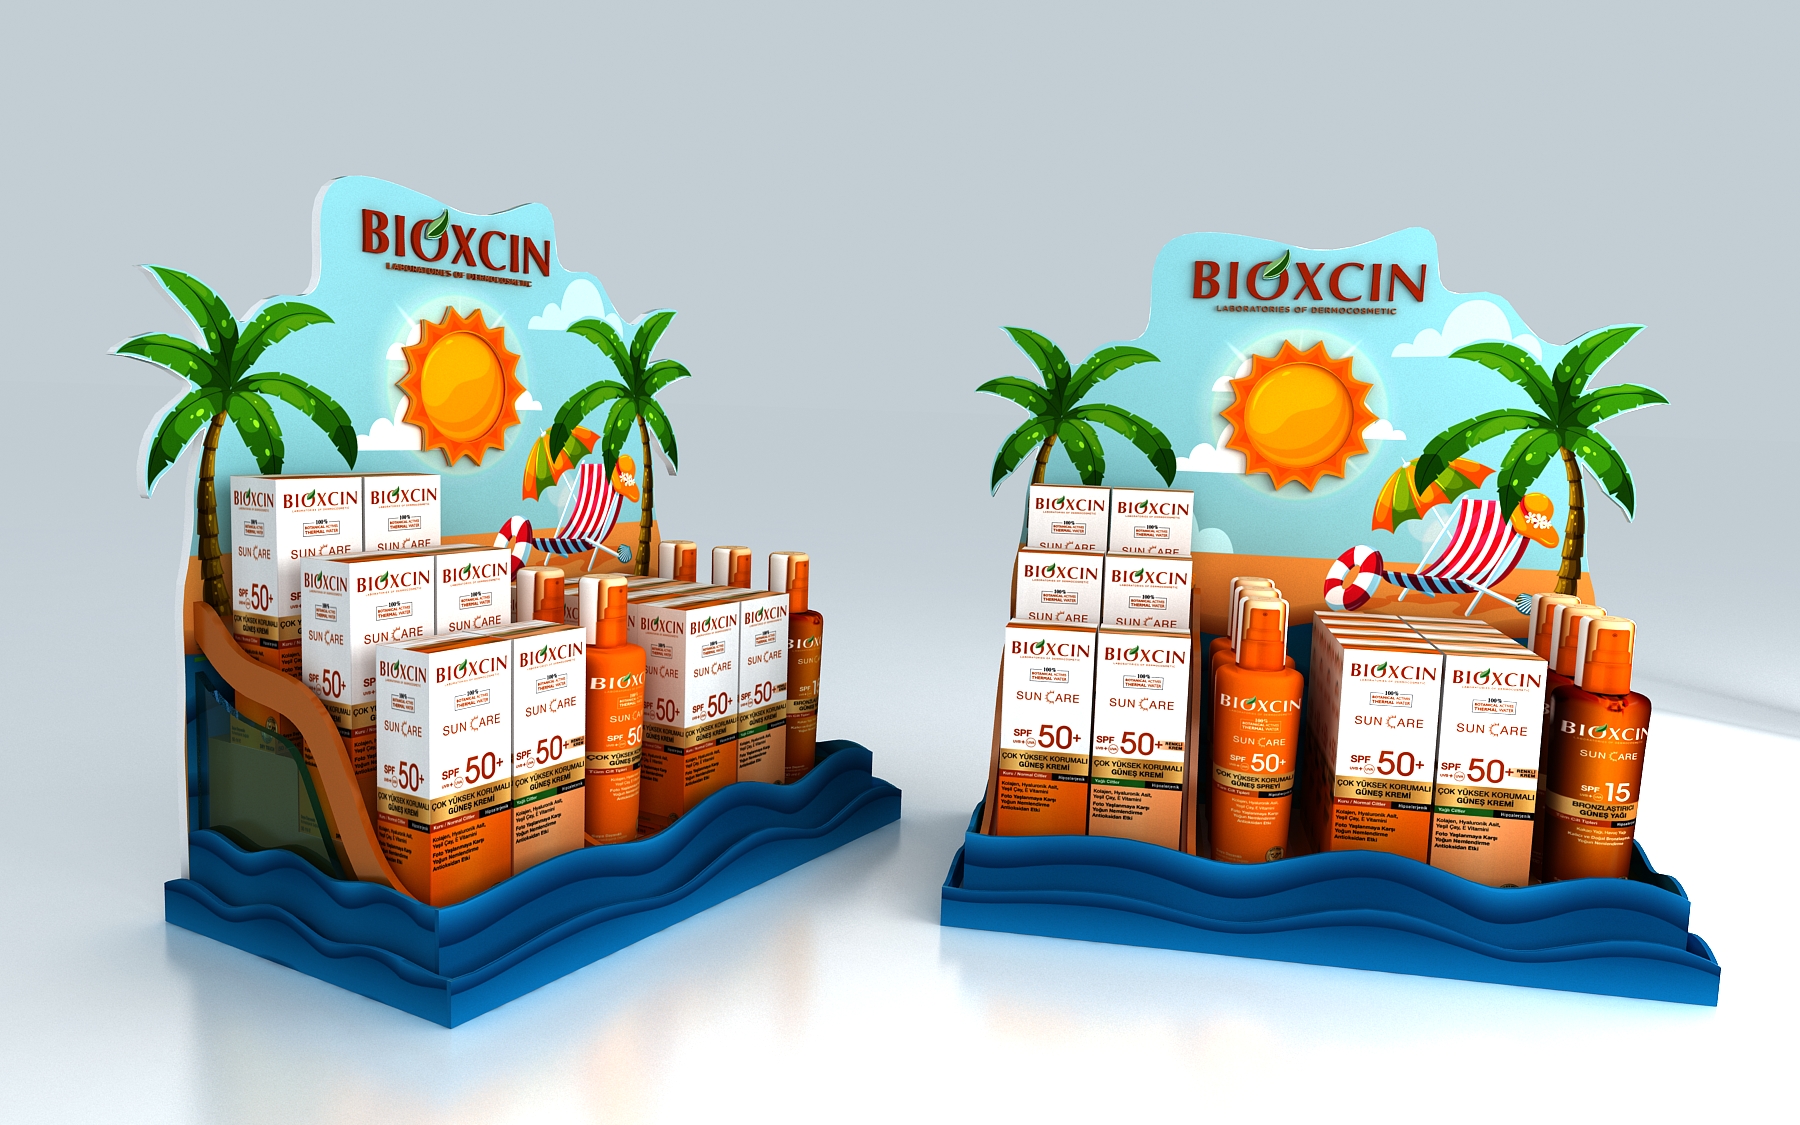 Bioxcin Suncare Countertop